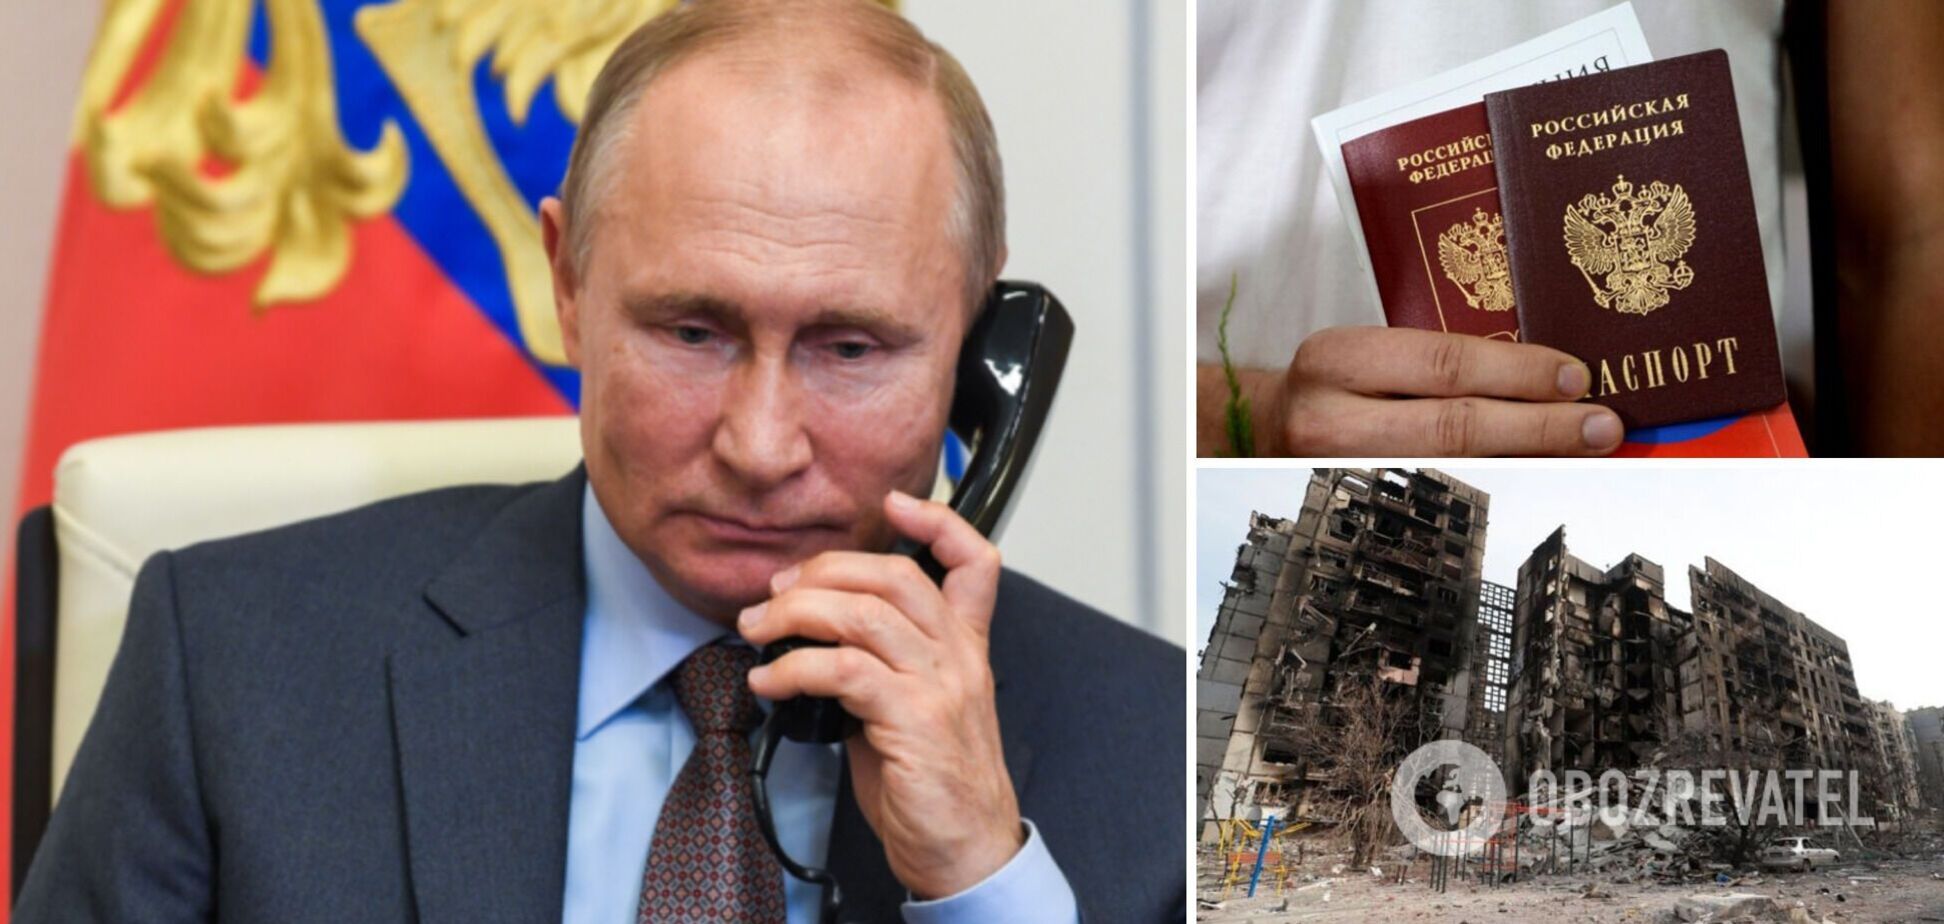 Путин решил раздавать российские паспорта в Мариуполе